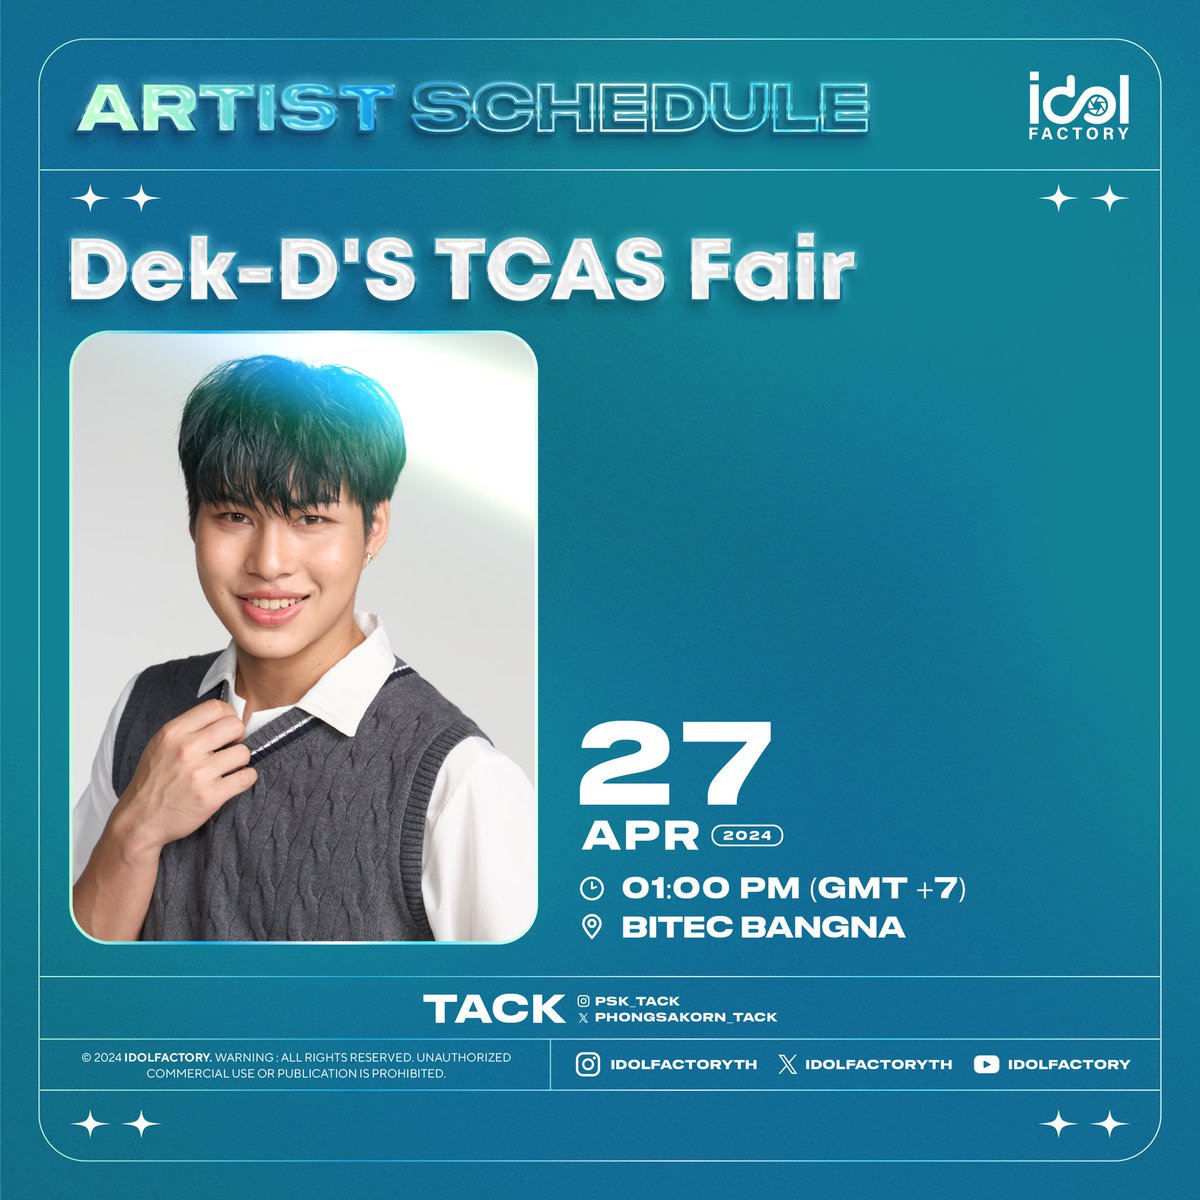 แทค พงศกร เป็นตัวแทนมหาวิทยาลัยหอการค้าไทย ร่วมงาน Dek-D'S TCAS Fair 2024 🗓️ 27 APR 2024 ⏰1 PM 📍BITEC Bangna ⚠️มีรวมพลหลังจบงาน ❌งดรับของขวัญและของฝาก #ttack #IdolfactoryTH